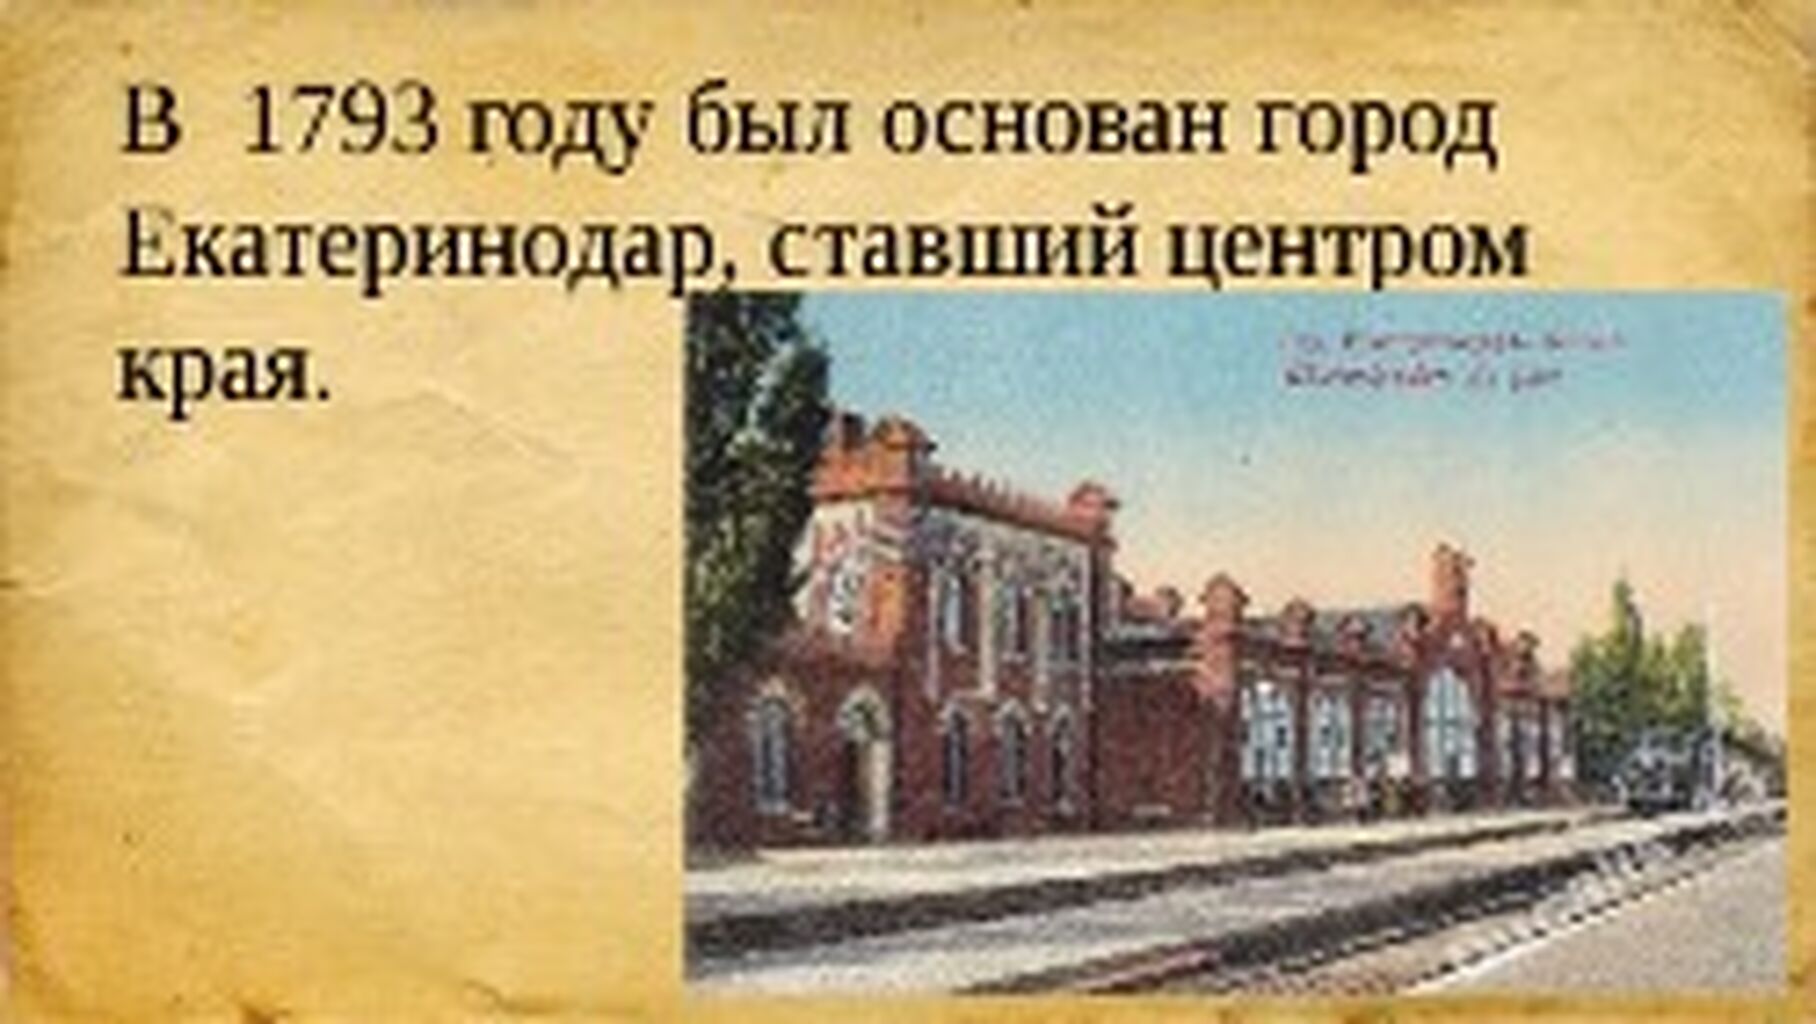 В 1793 году был основан город Екатеринодар ставший центром края